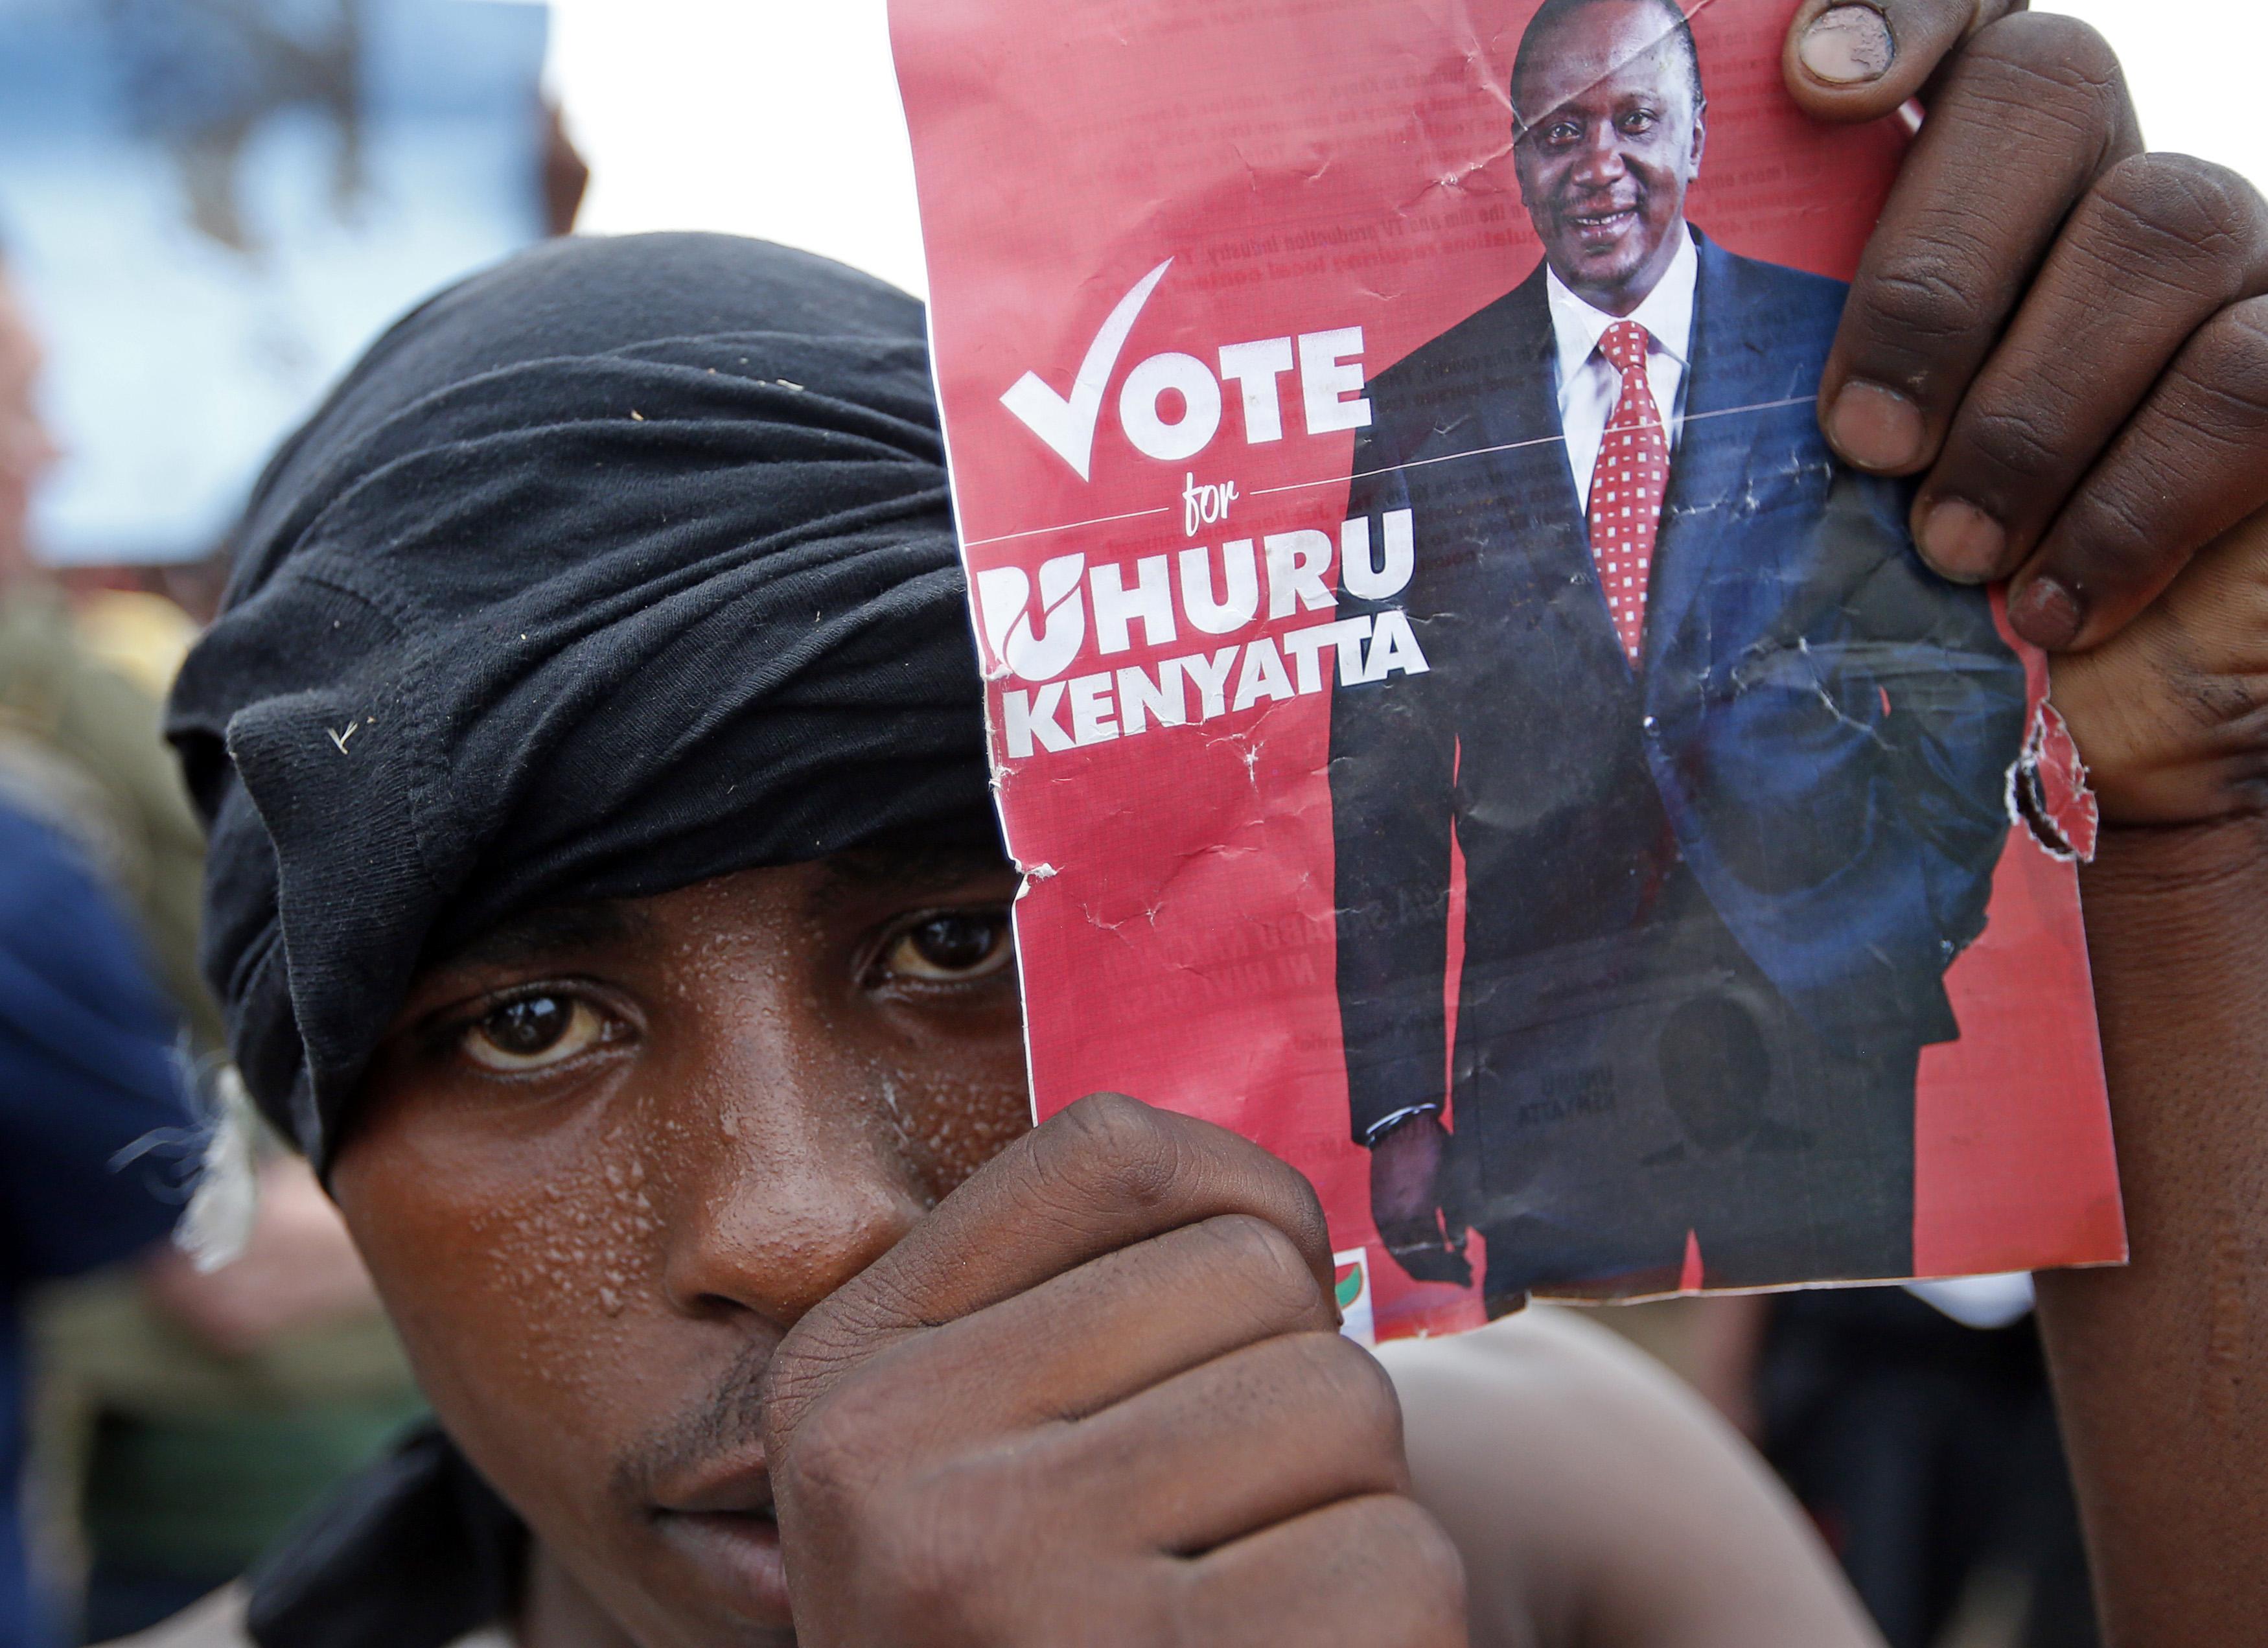 Νικητής στον πρώτο γύρο των εκλογών ο Κενυάτα